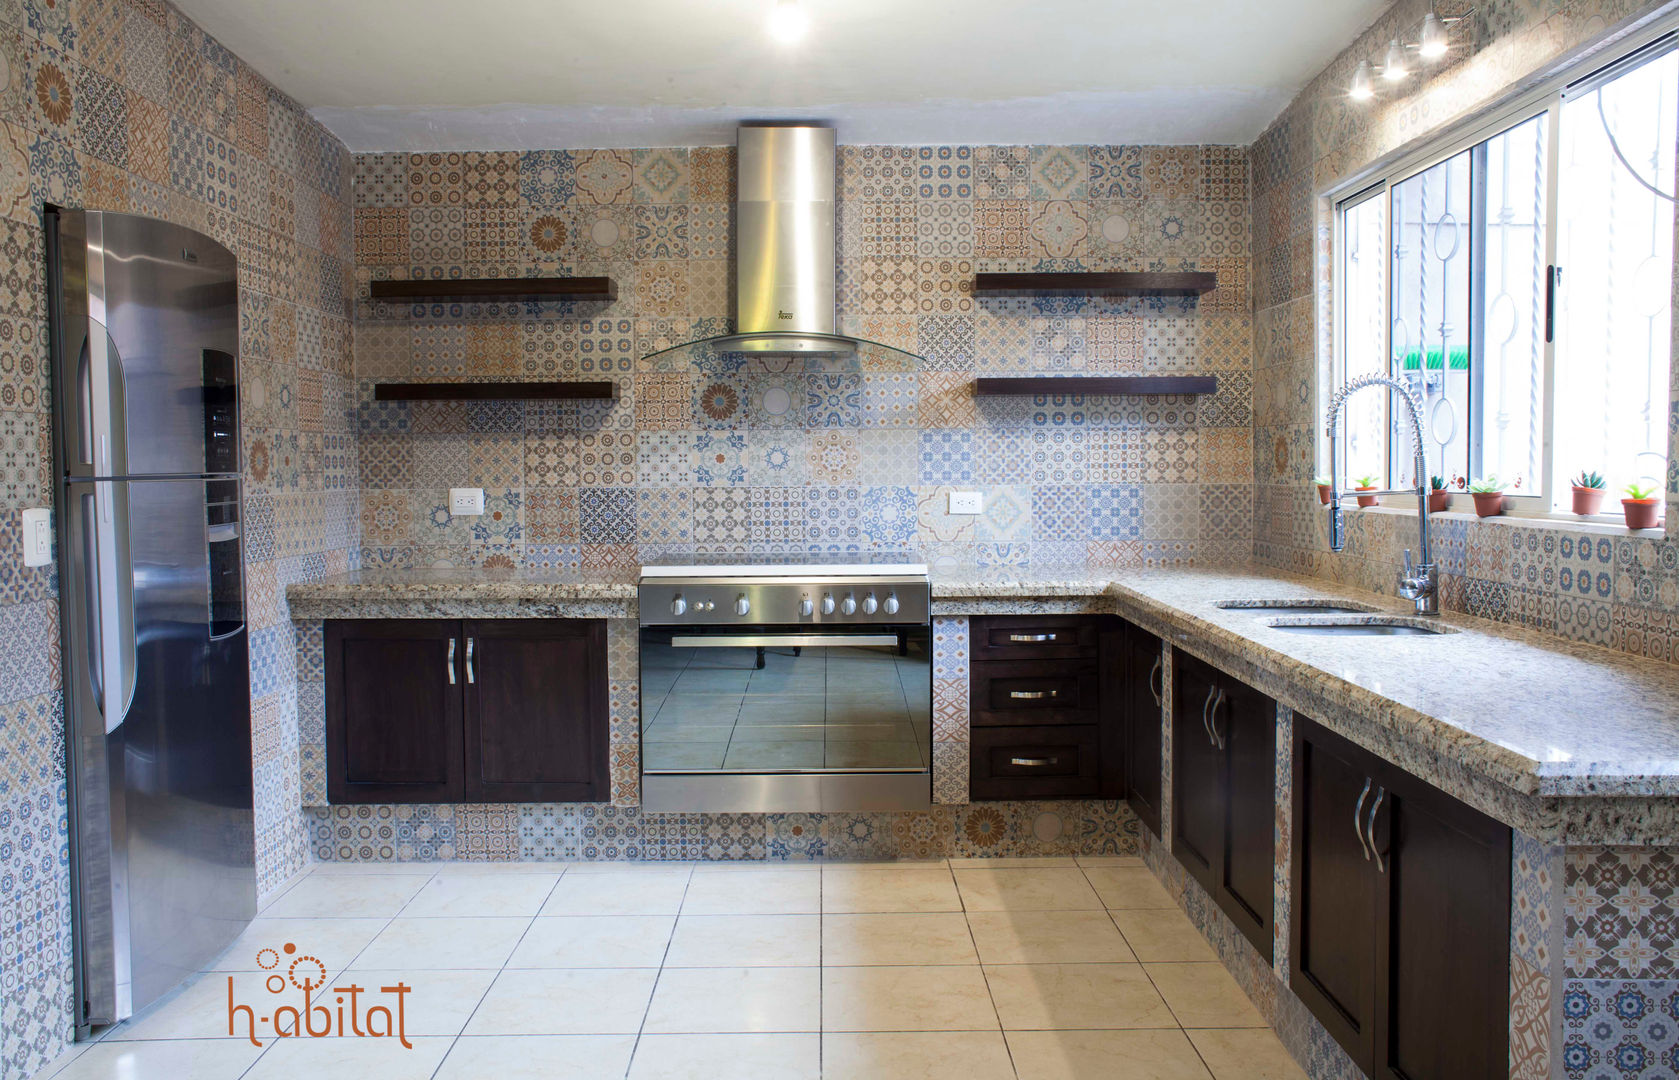 Cocina Moderna con azulejo Vintage, H-abitat Diseño & Interiores H-abitat Diseño & Interiores مطبخ بلاط